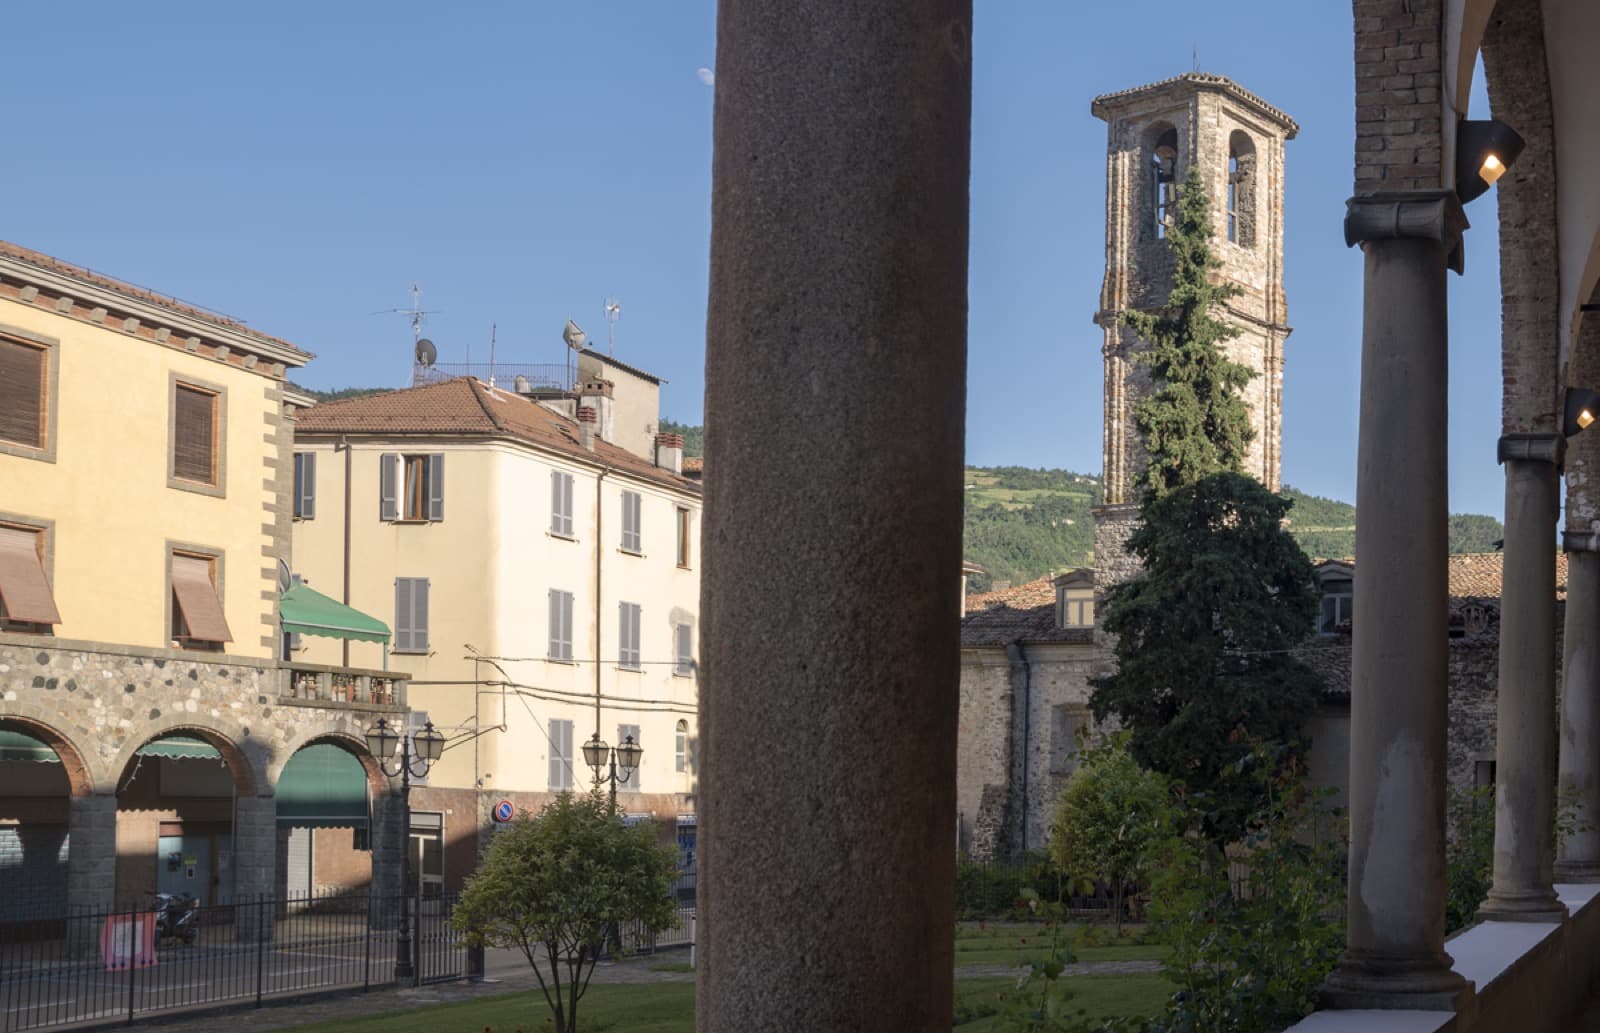 Bobbio (PC), Abbazia di San Colombano | Credit: TheCrowdedPlanet